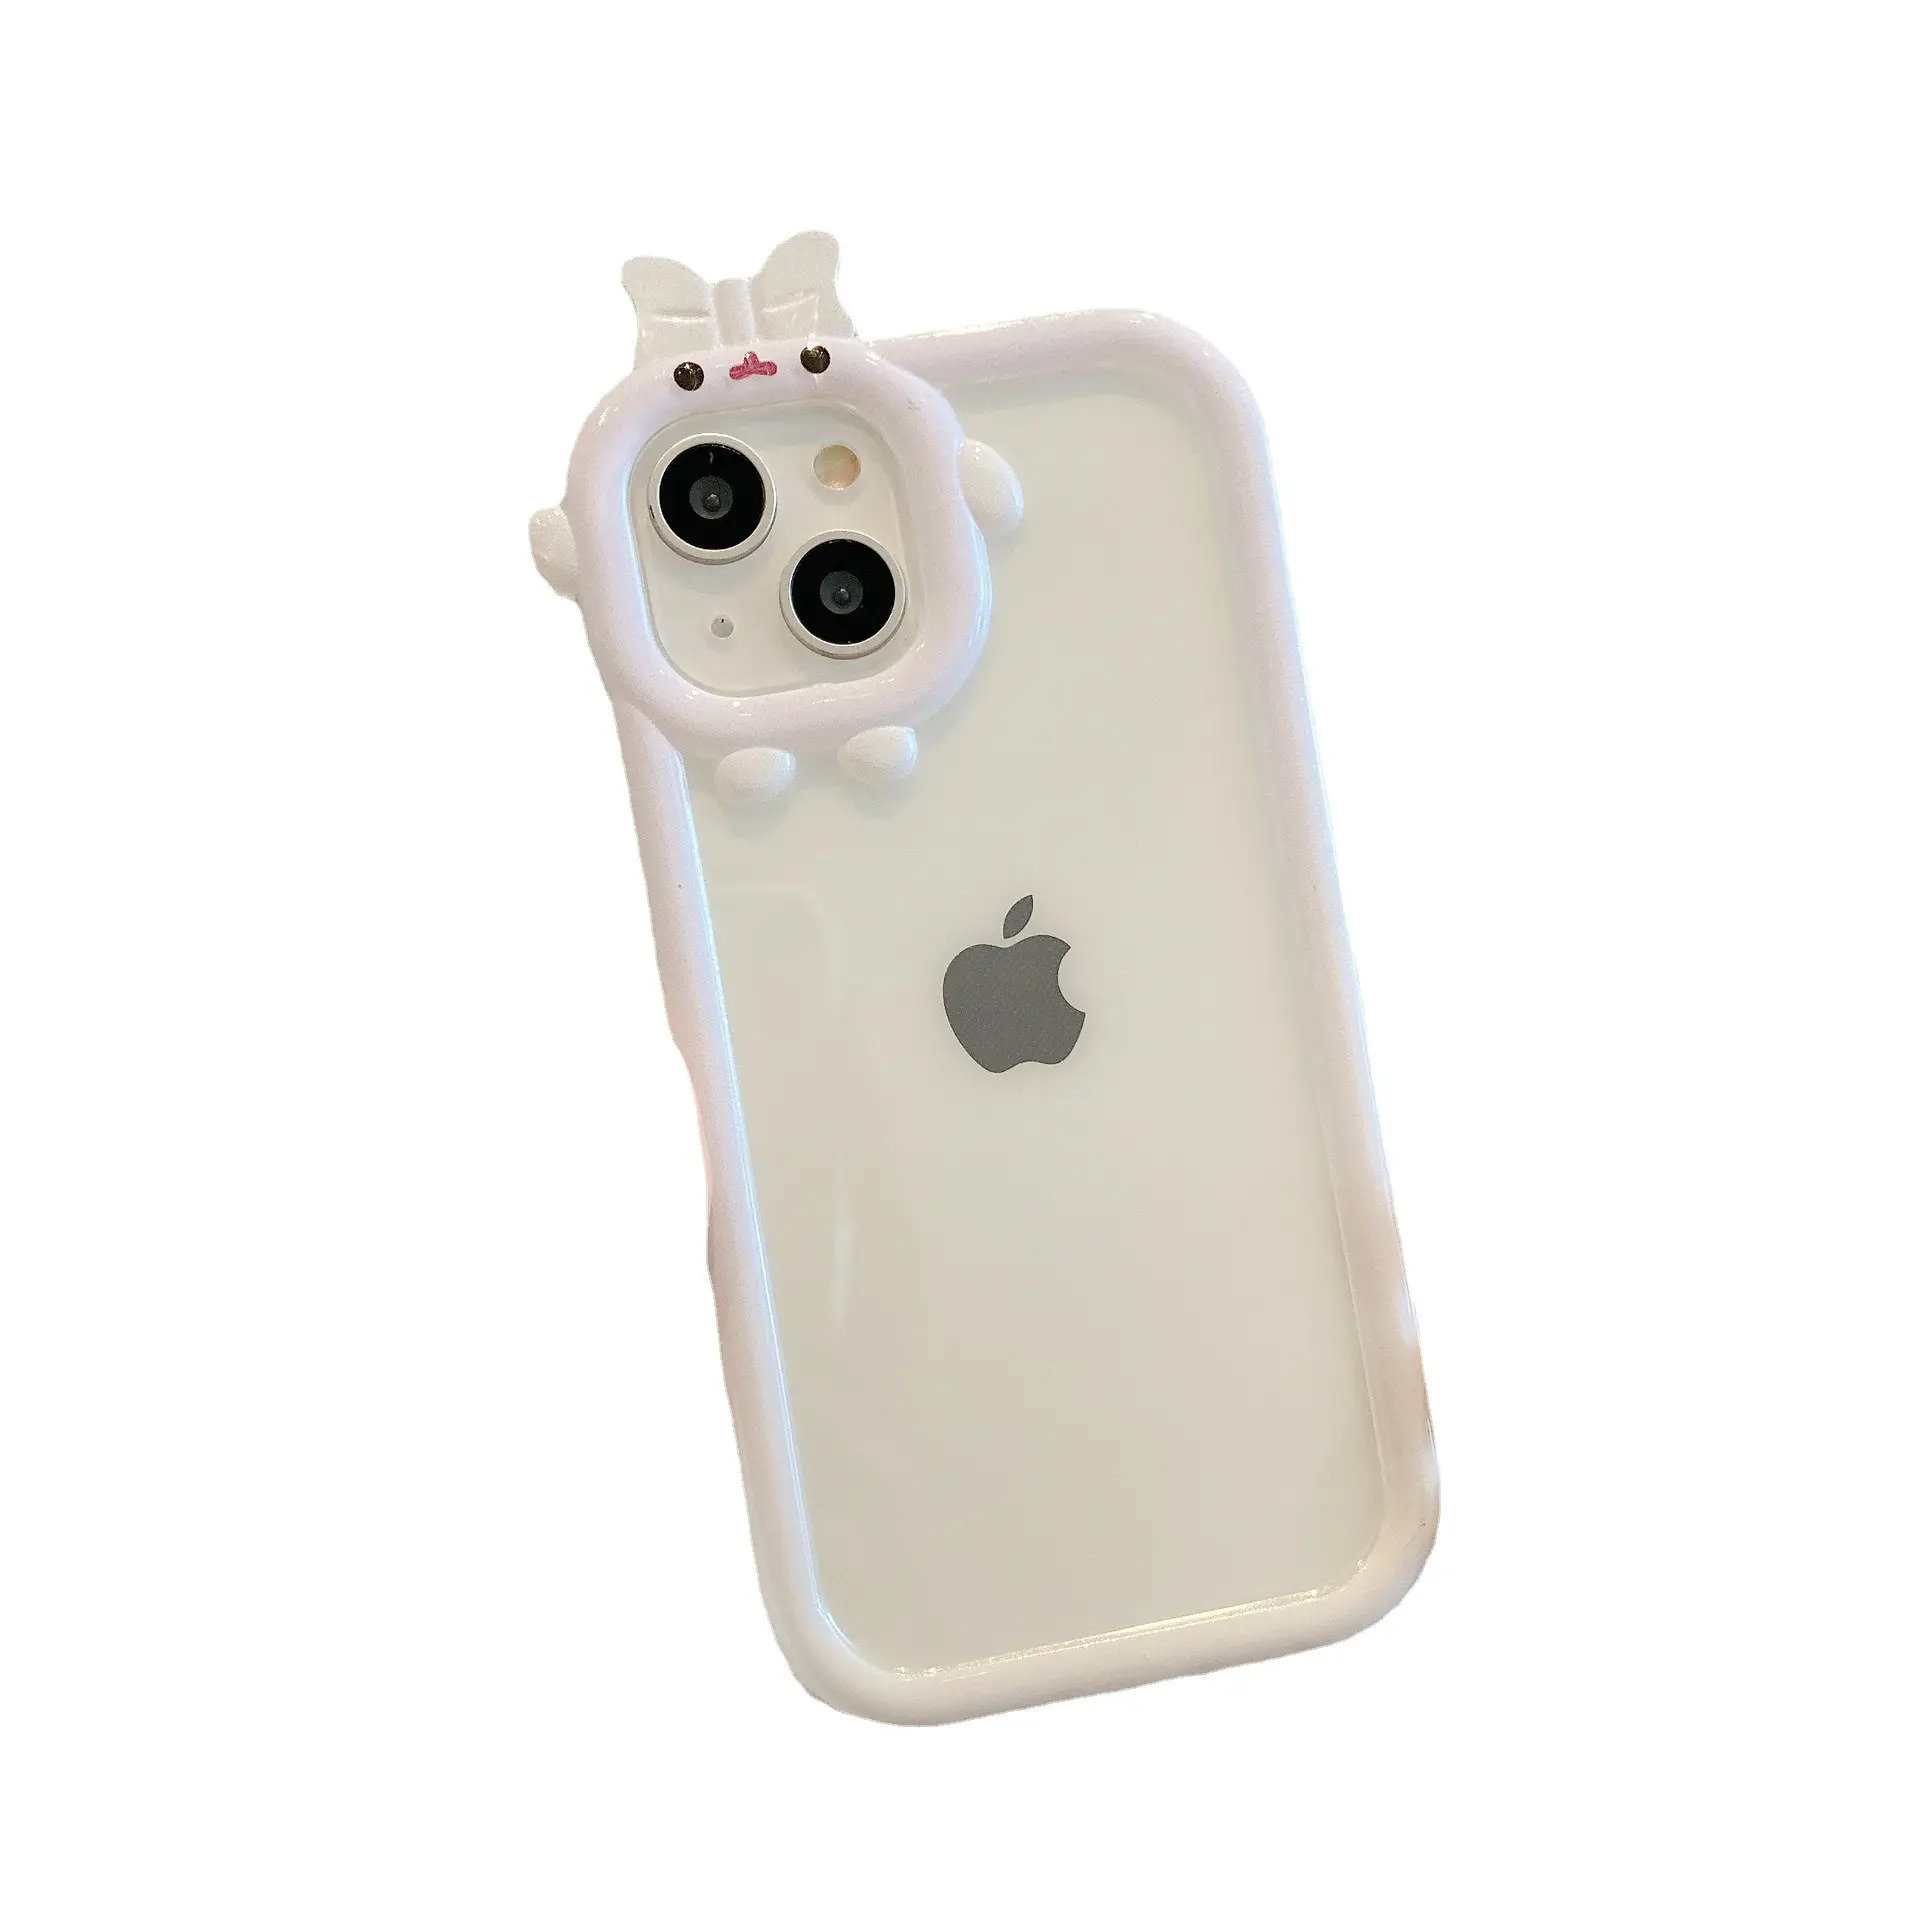 Casing ponsel Apple 14 iphone13, casing ponsel Monster kecil angin dua warna gradien TPU untuk Apple 14 iphone13 motif ledakan